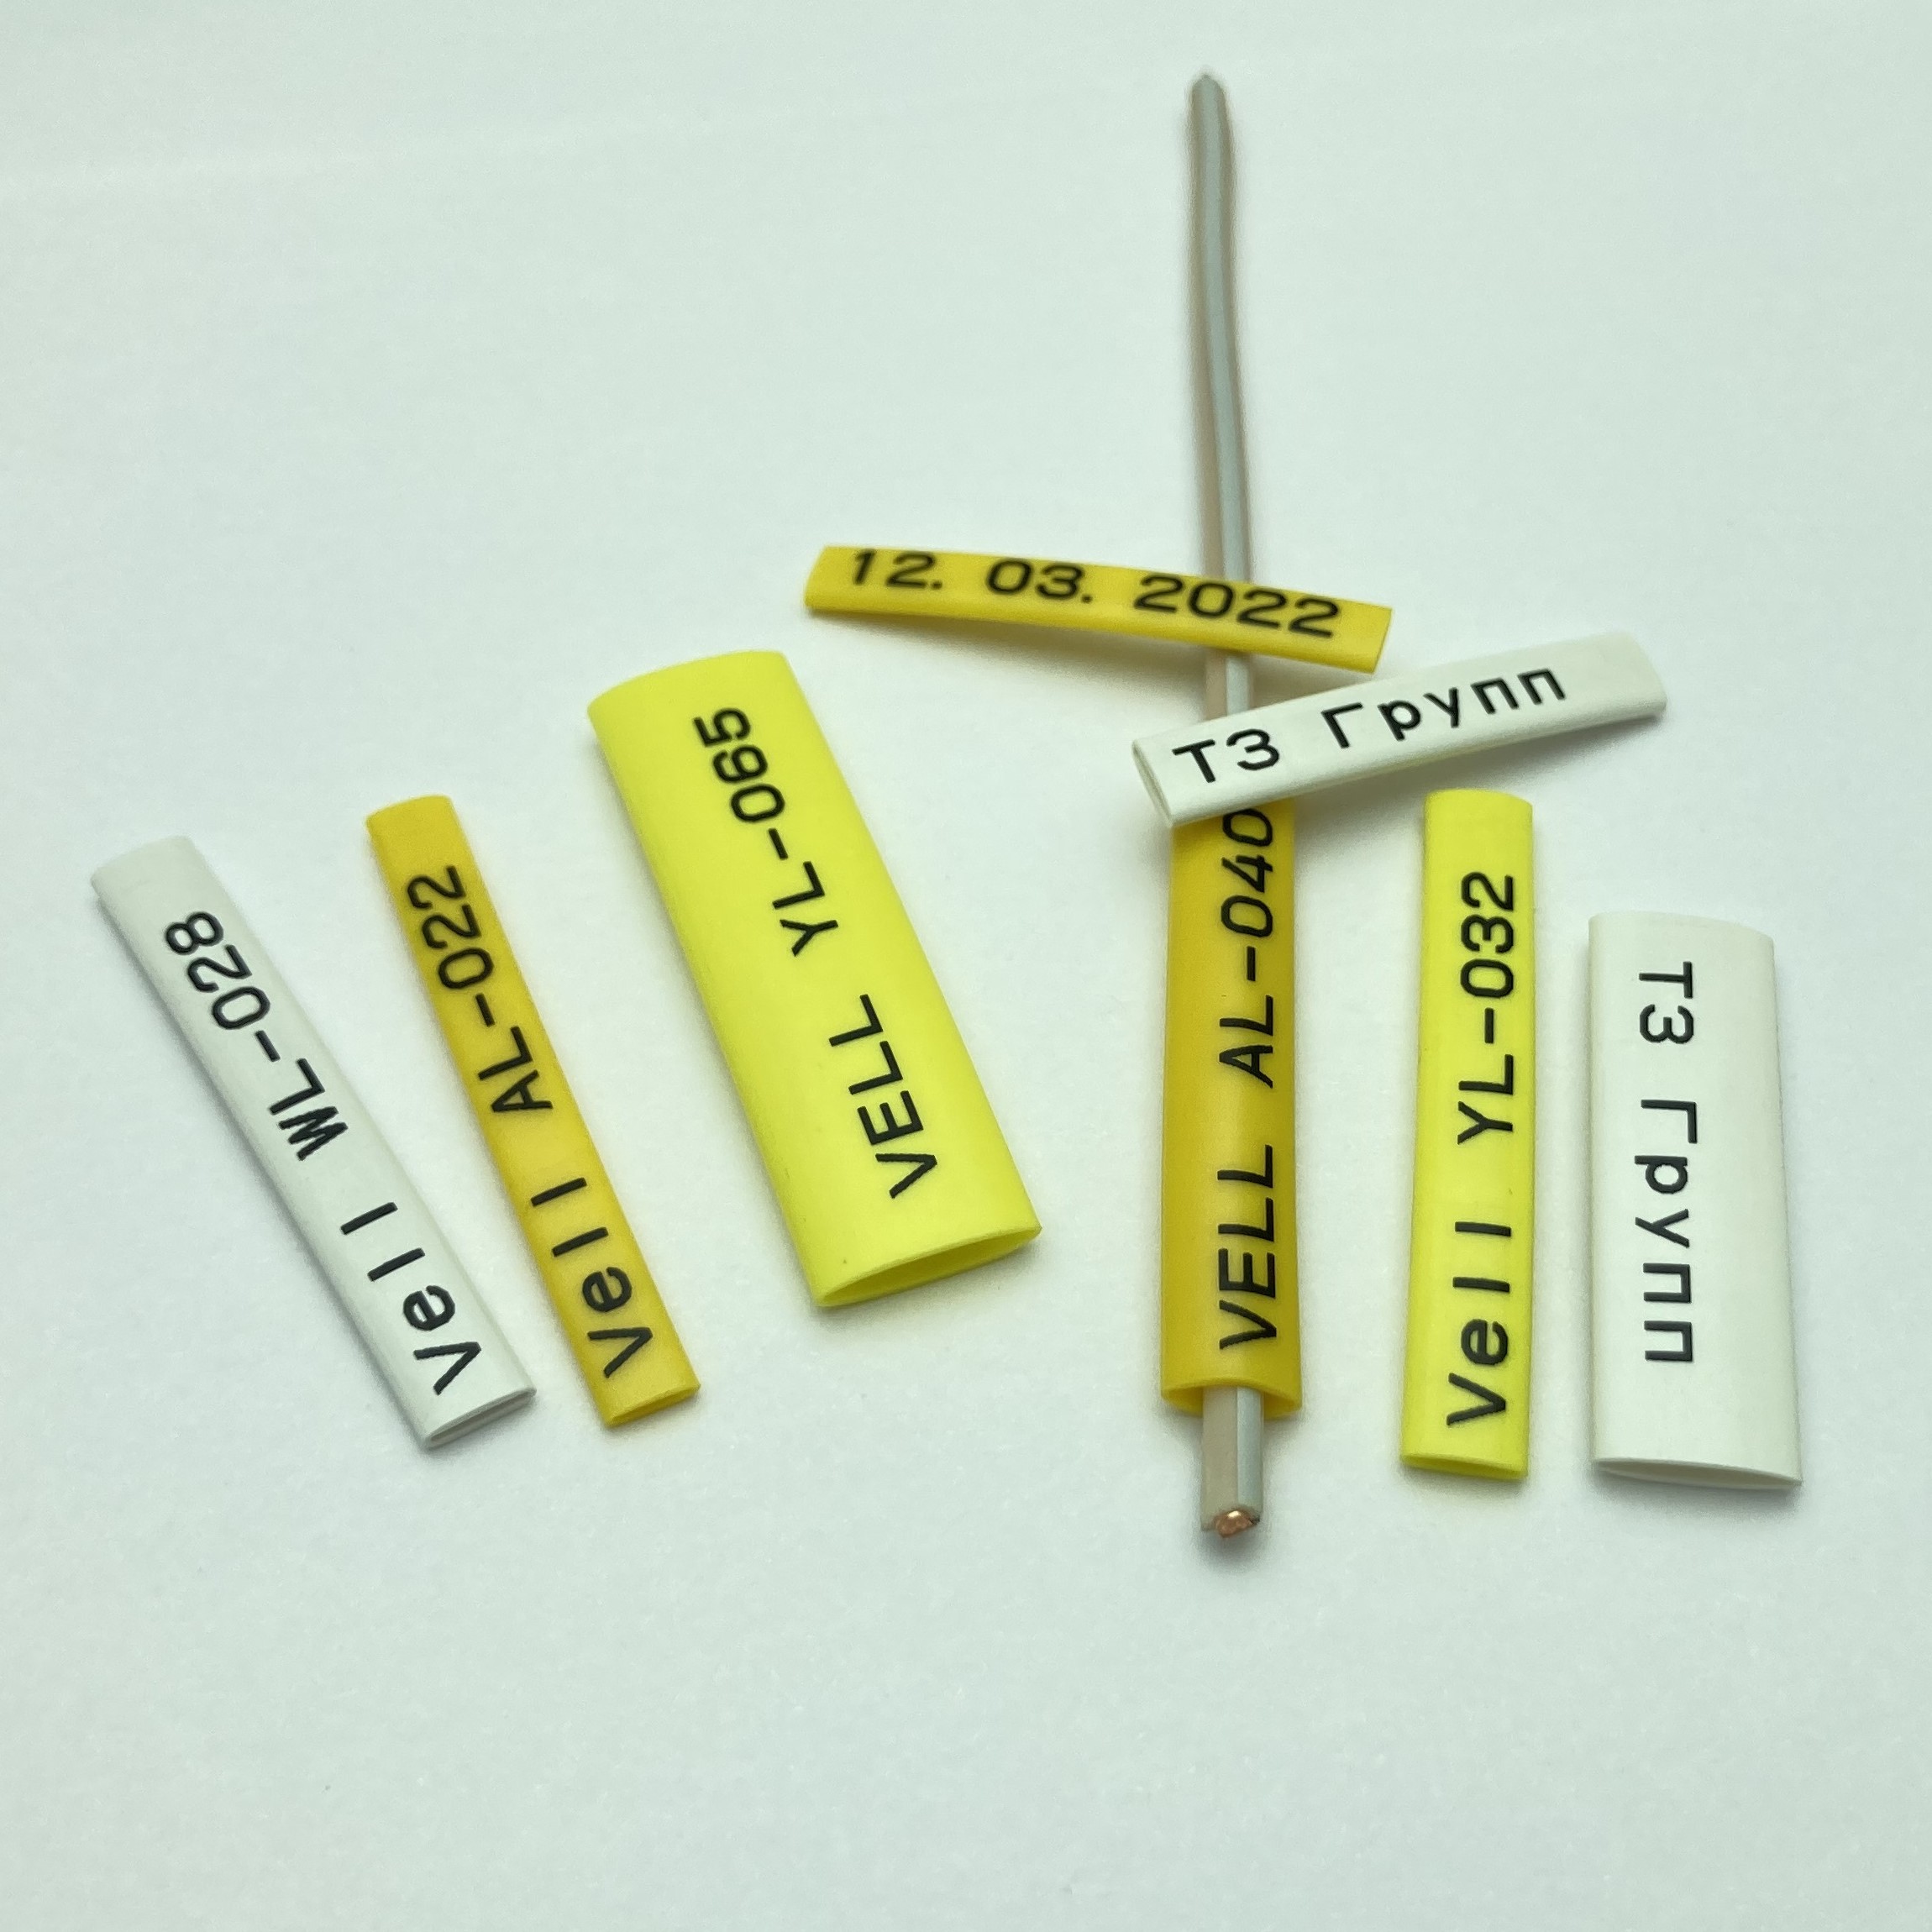 Фото Профиль ПВХ овальный Vell AL-036 для маркировки проводов, Ø 3,6 мм, 200 метров, янтарно-желтый, аналог Partex PO-06 (самозатухающий) {590396} (3)